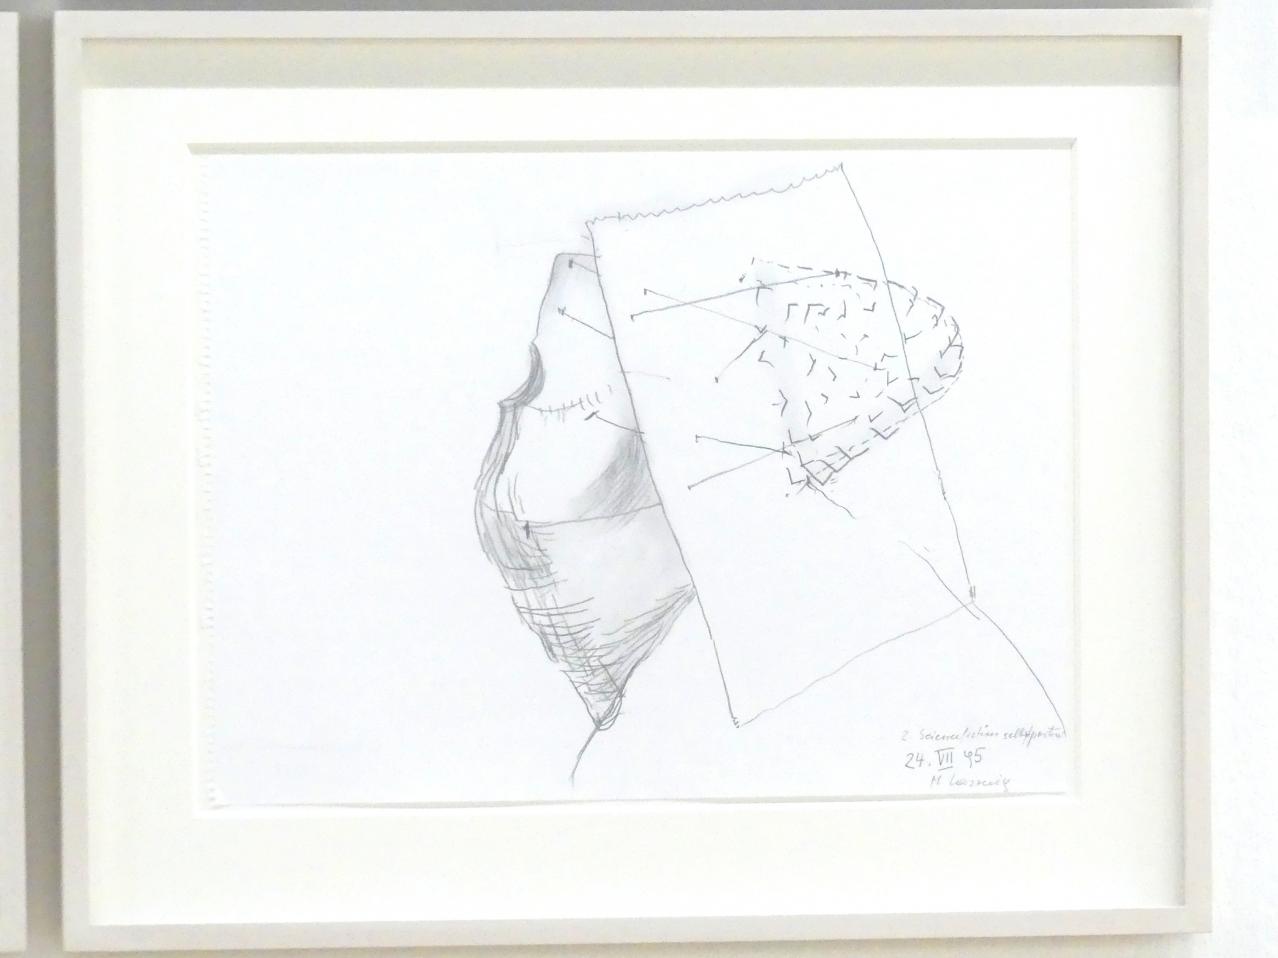 Maria Lassnig (1945–2011), 2. Sciencefictionselbstportrait, München, Lenbachhaus, Kunstbau, Ausstellung "BODY CHECK" vom 21.05.-15.09.2019, 1995